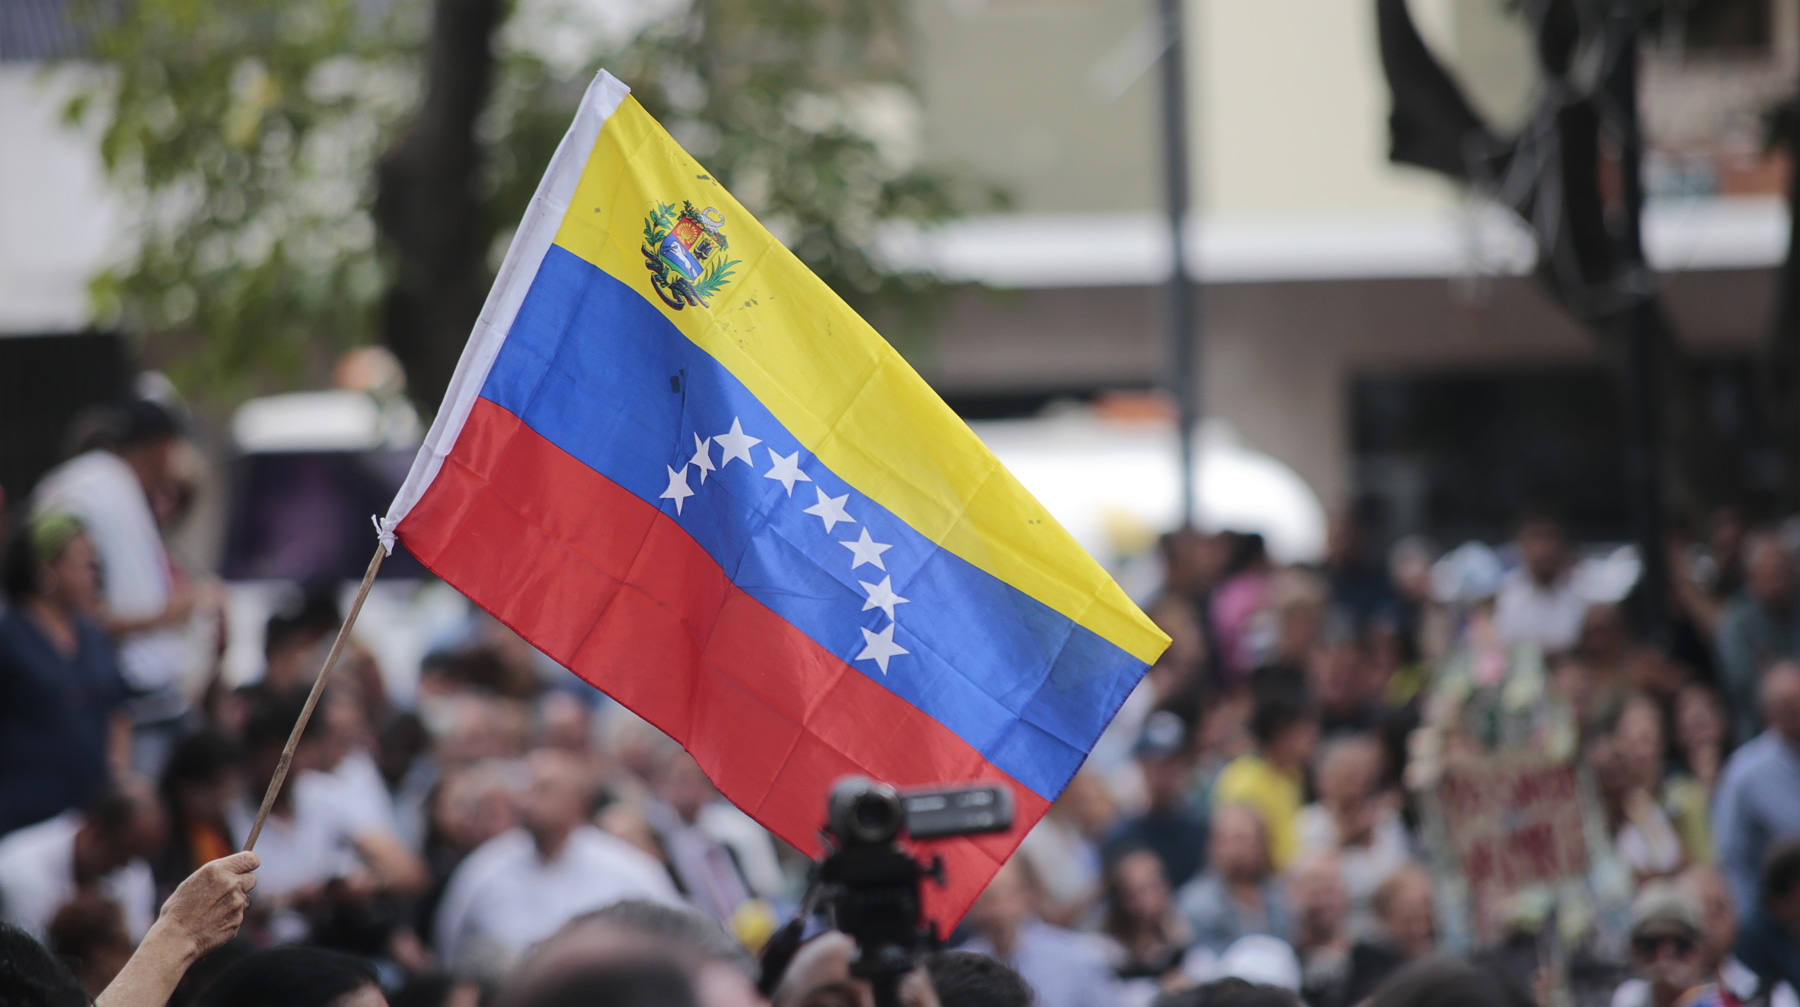 Ранее Великобритания присоединилась к ультиматуму о проведении новых выборов в Венесуэле Фото: © GLOBAL LOOK Press / Rafael Hernandez / dpa